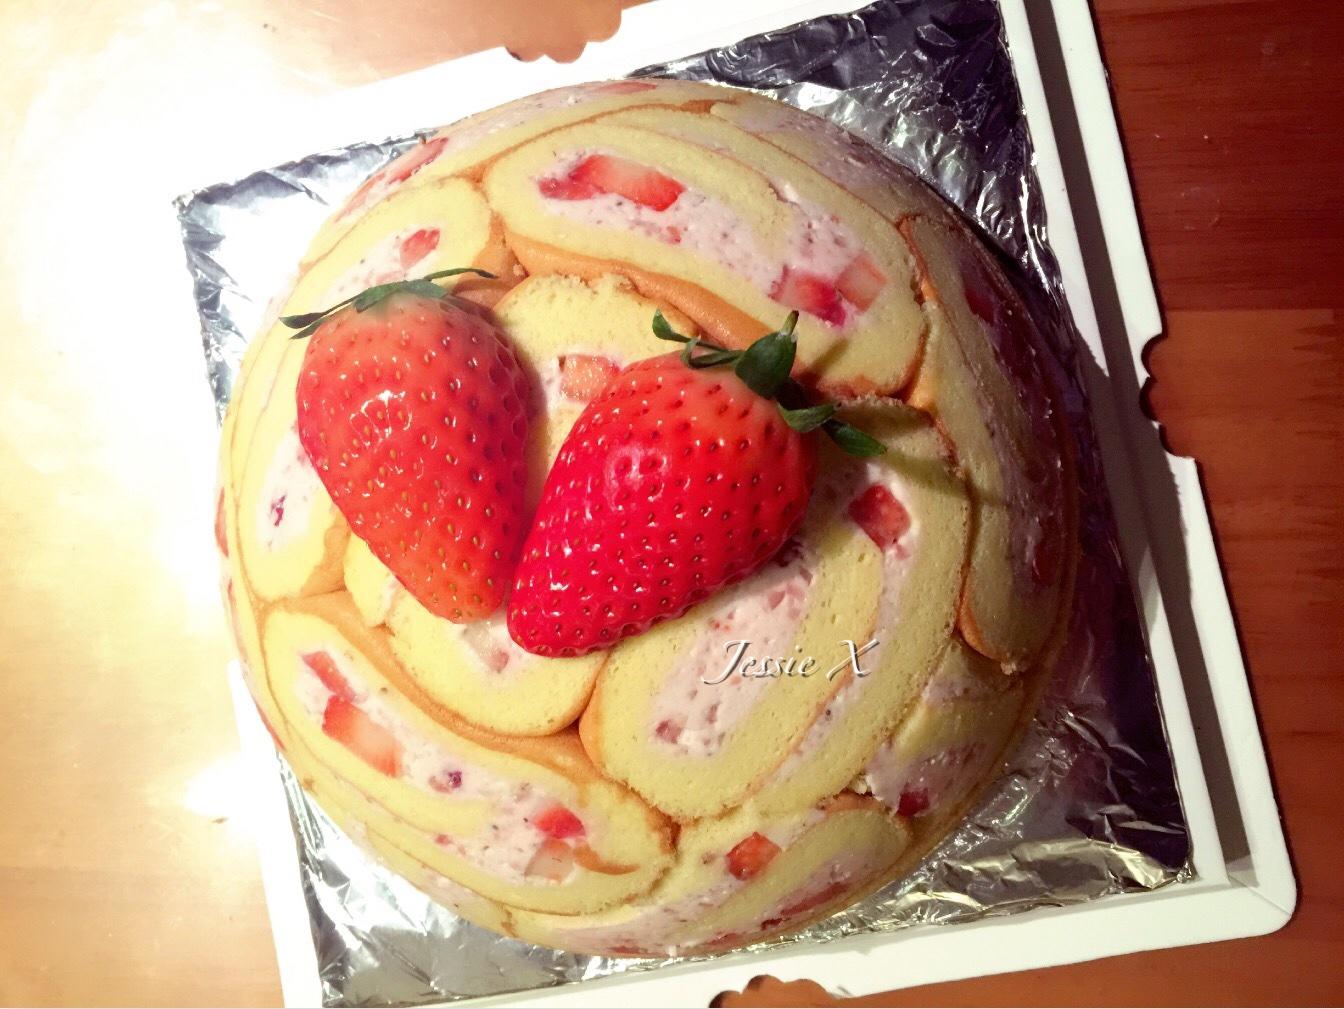 草莓炸弹~~~蛋糕卷版的裸炸弹的做法